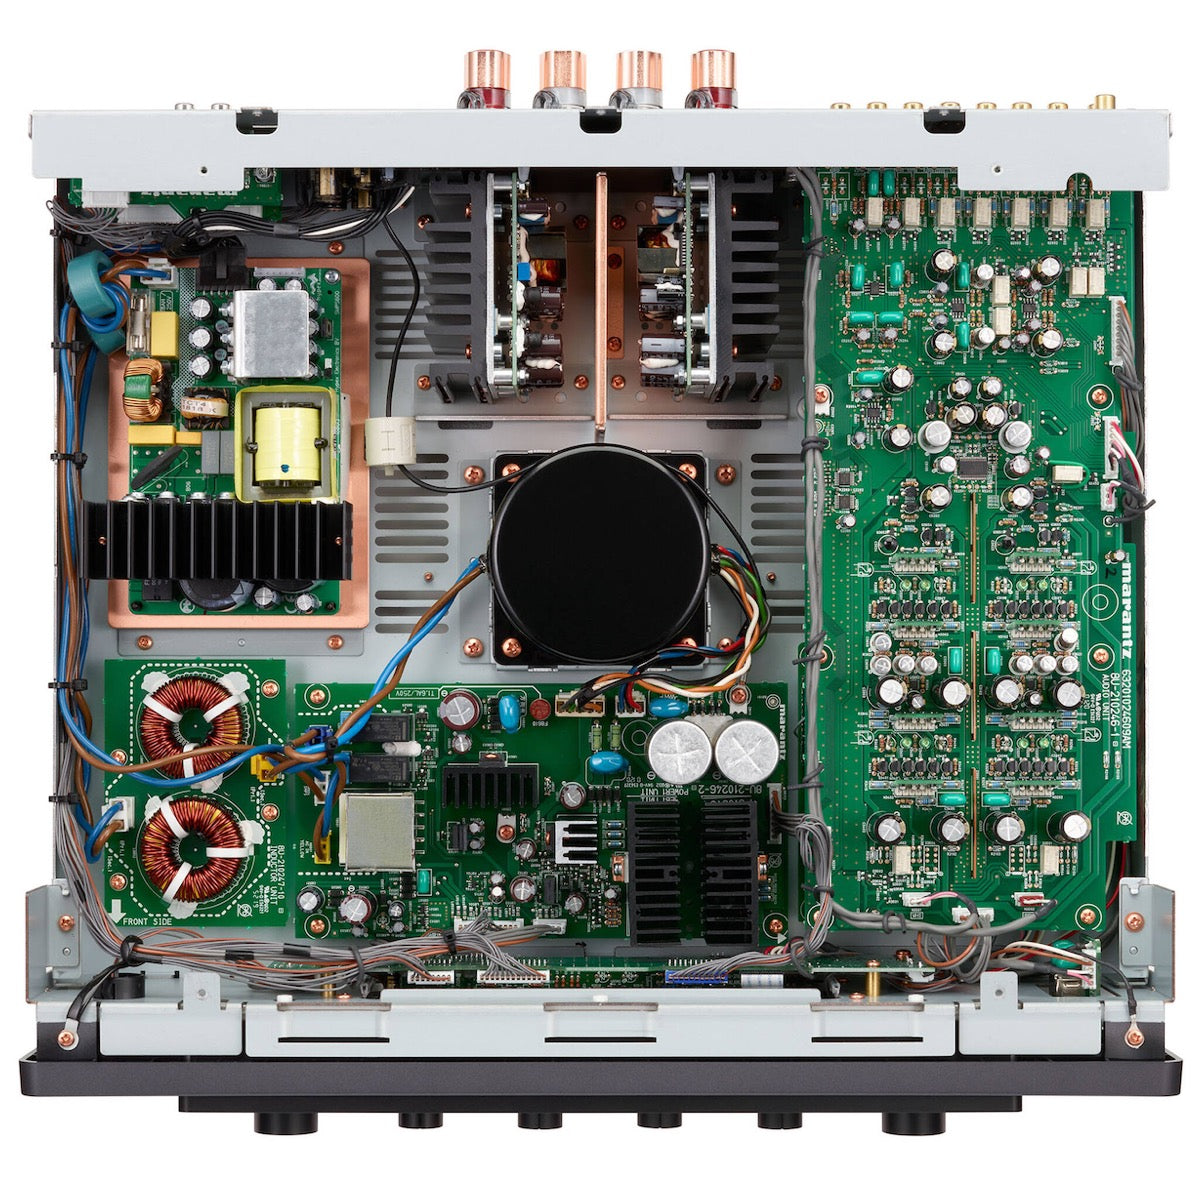 Marantz Model 30 - Integrated Amplifier - AVStore